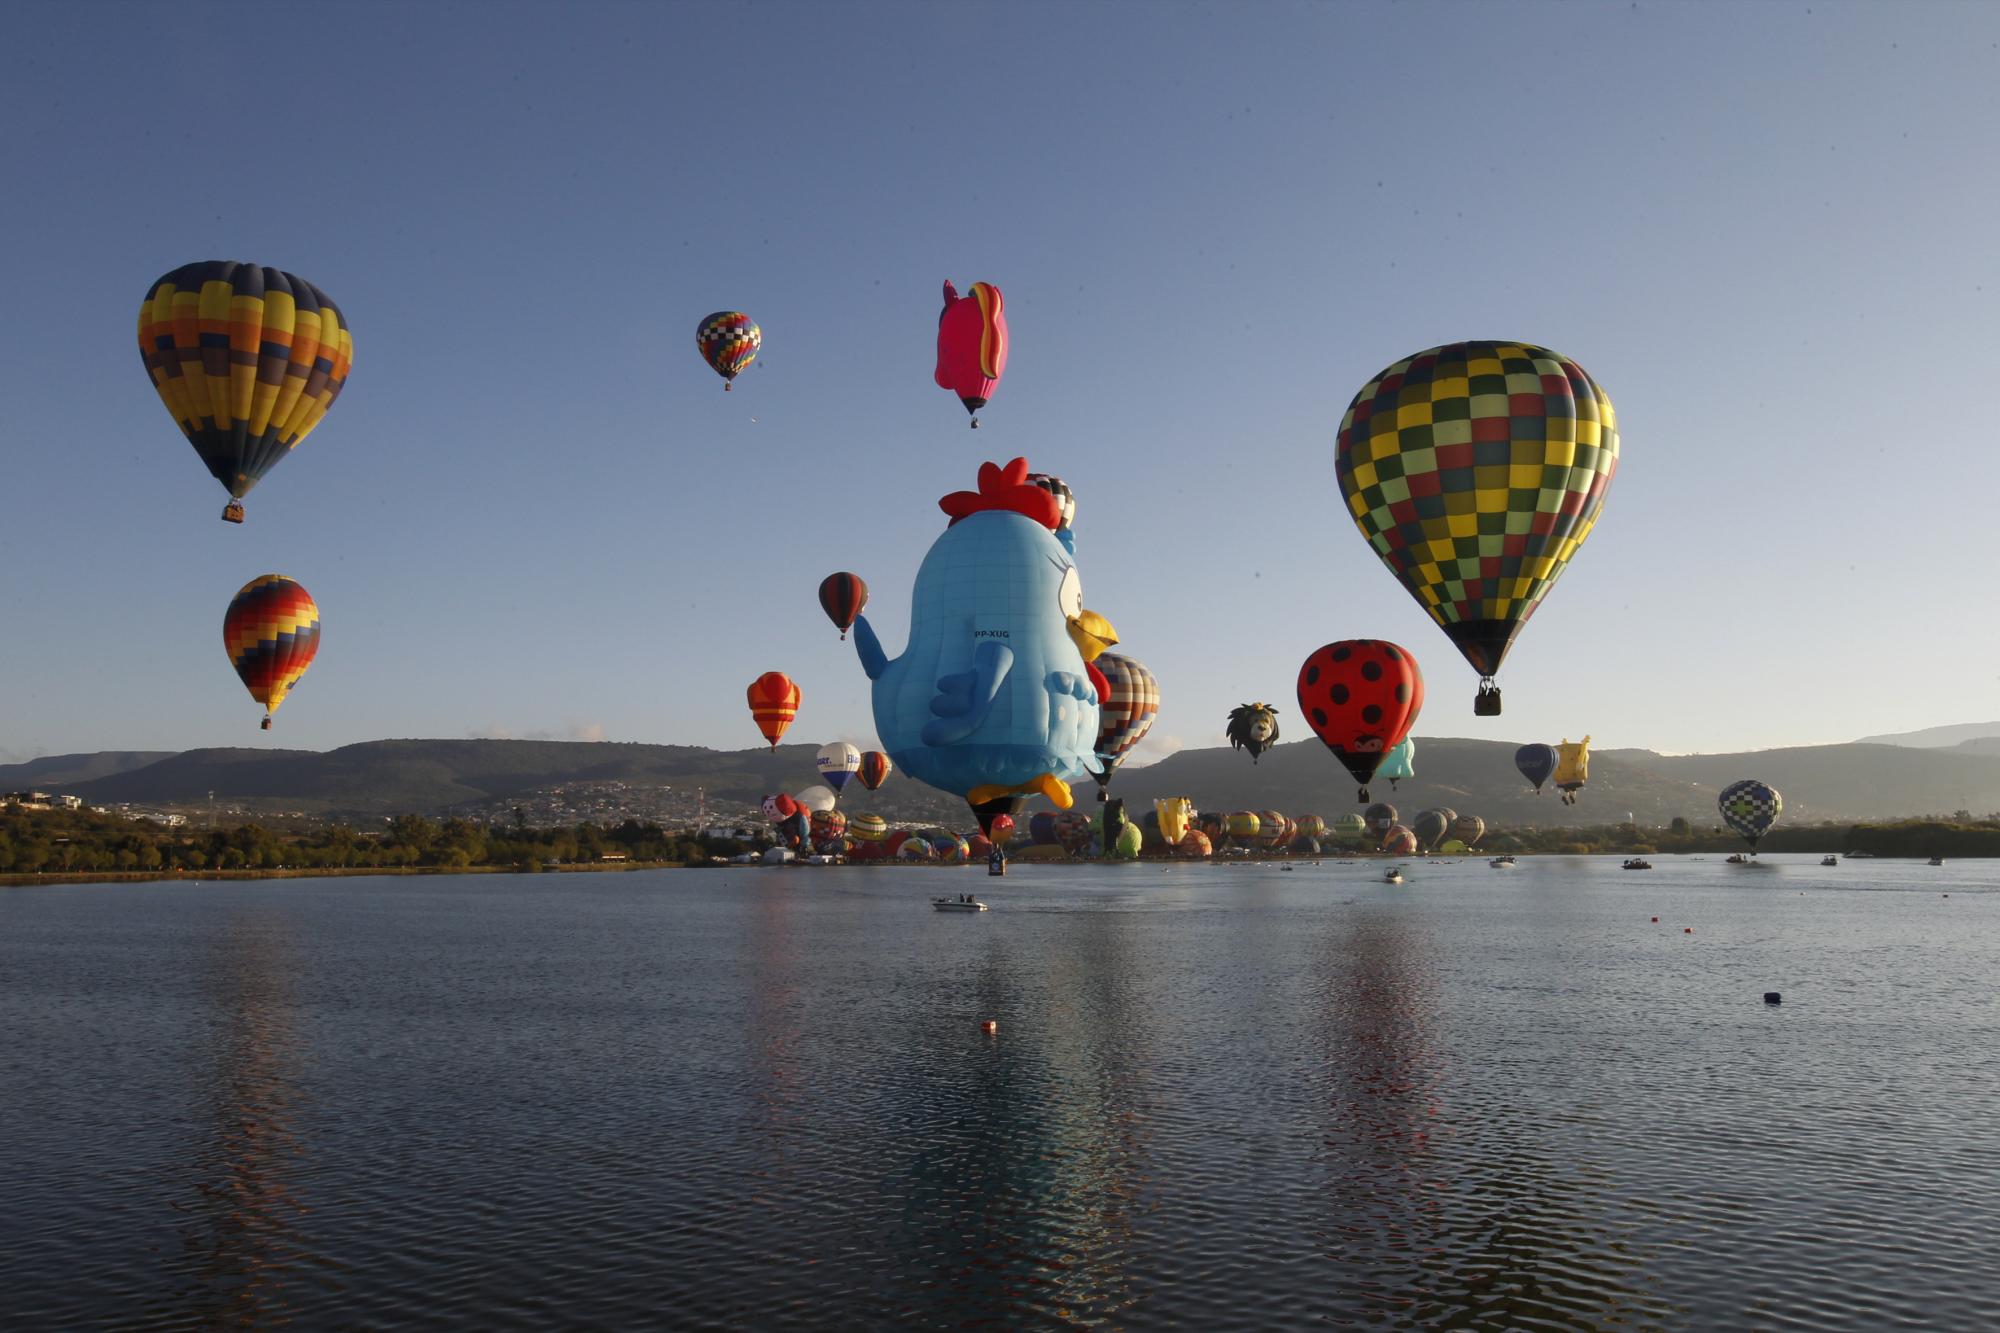 Globos aerostáticos vuelan sobre la presa Papalote durante el Festival Internacional de Globos Aerostáticos en León, México, el viernes 12 de noviembre de 2021 (AP Photo / Mario Armas).